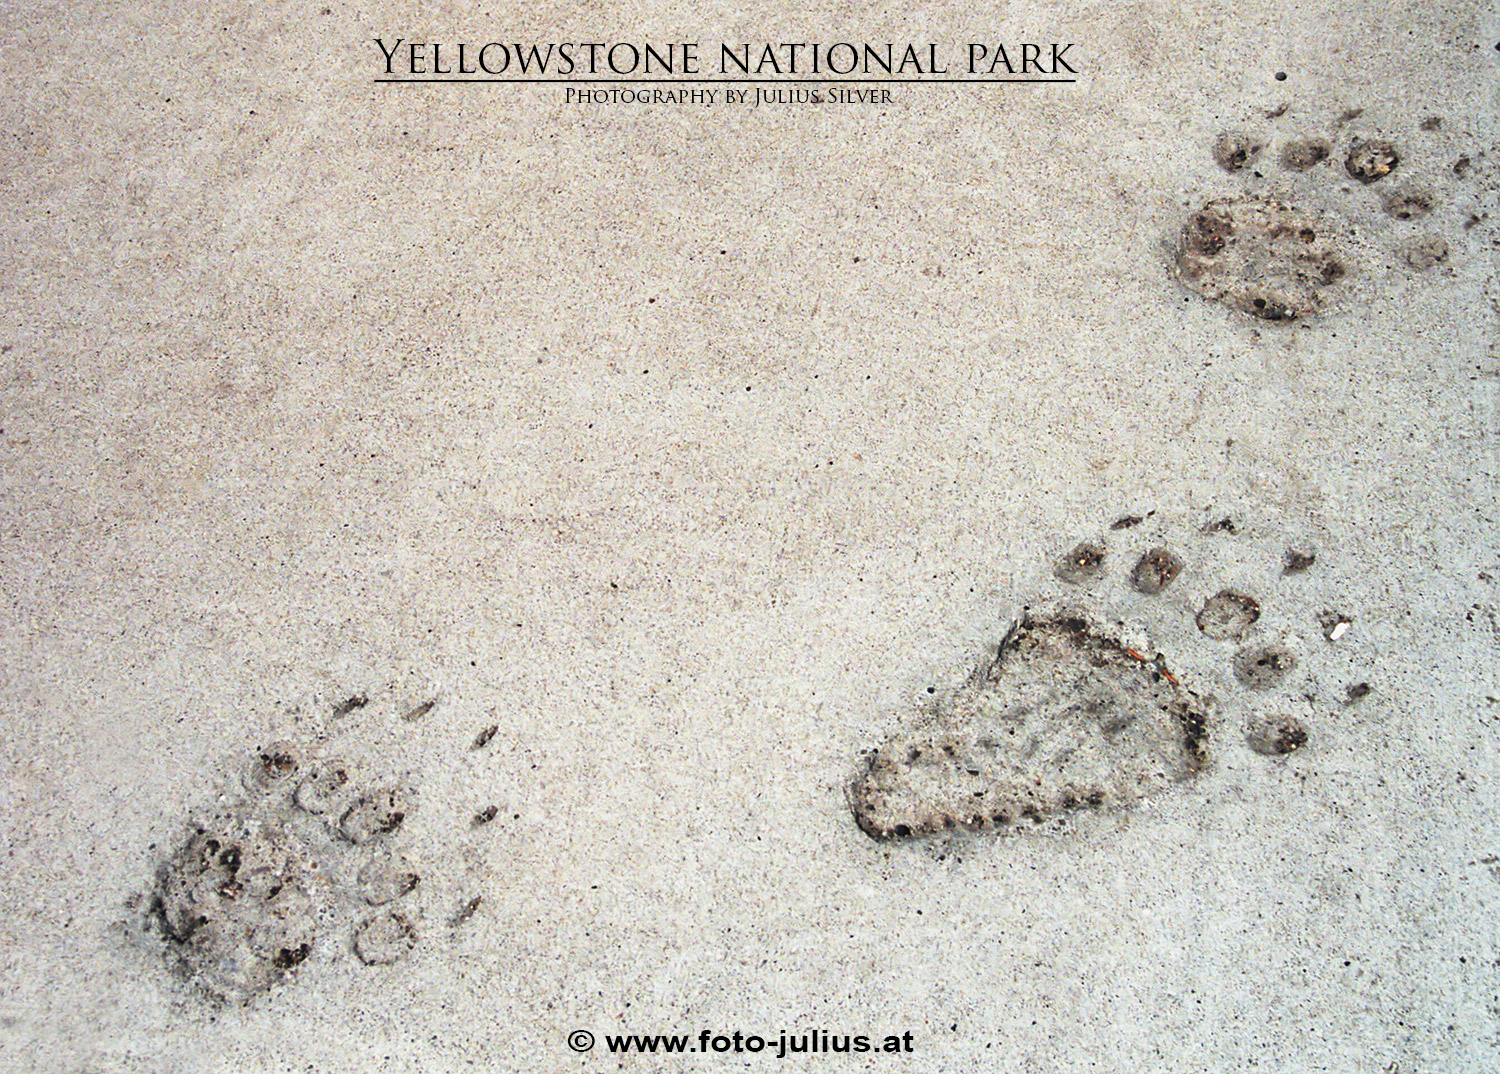 y059a_Yellowstone.jpg, 920kB